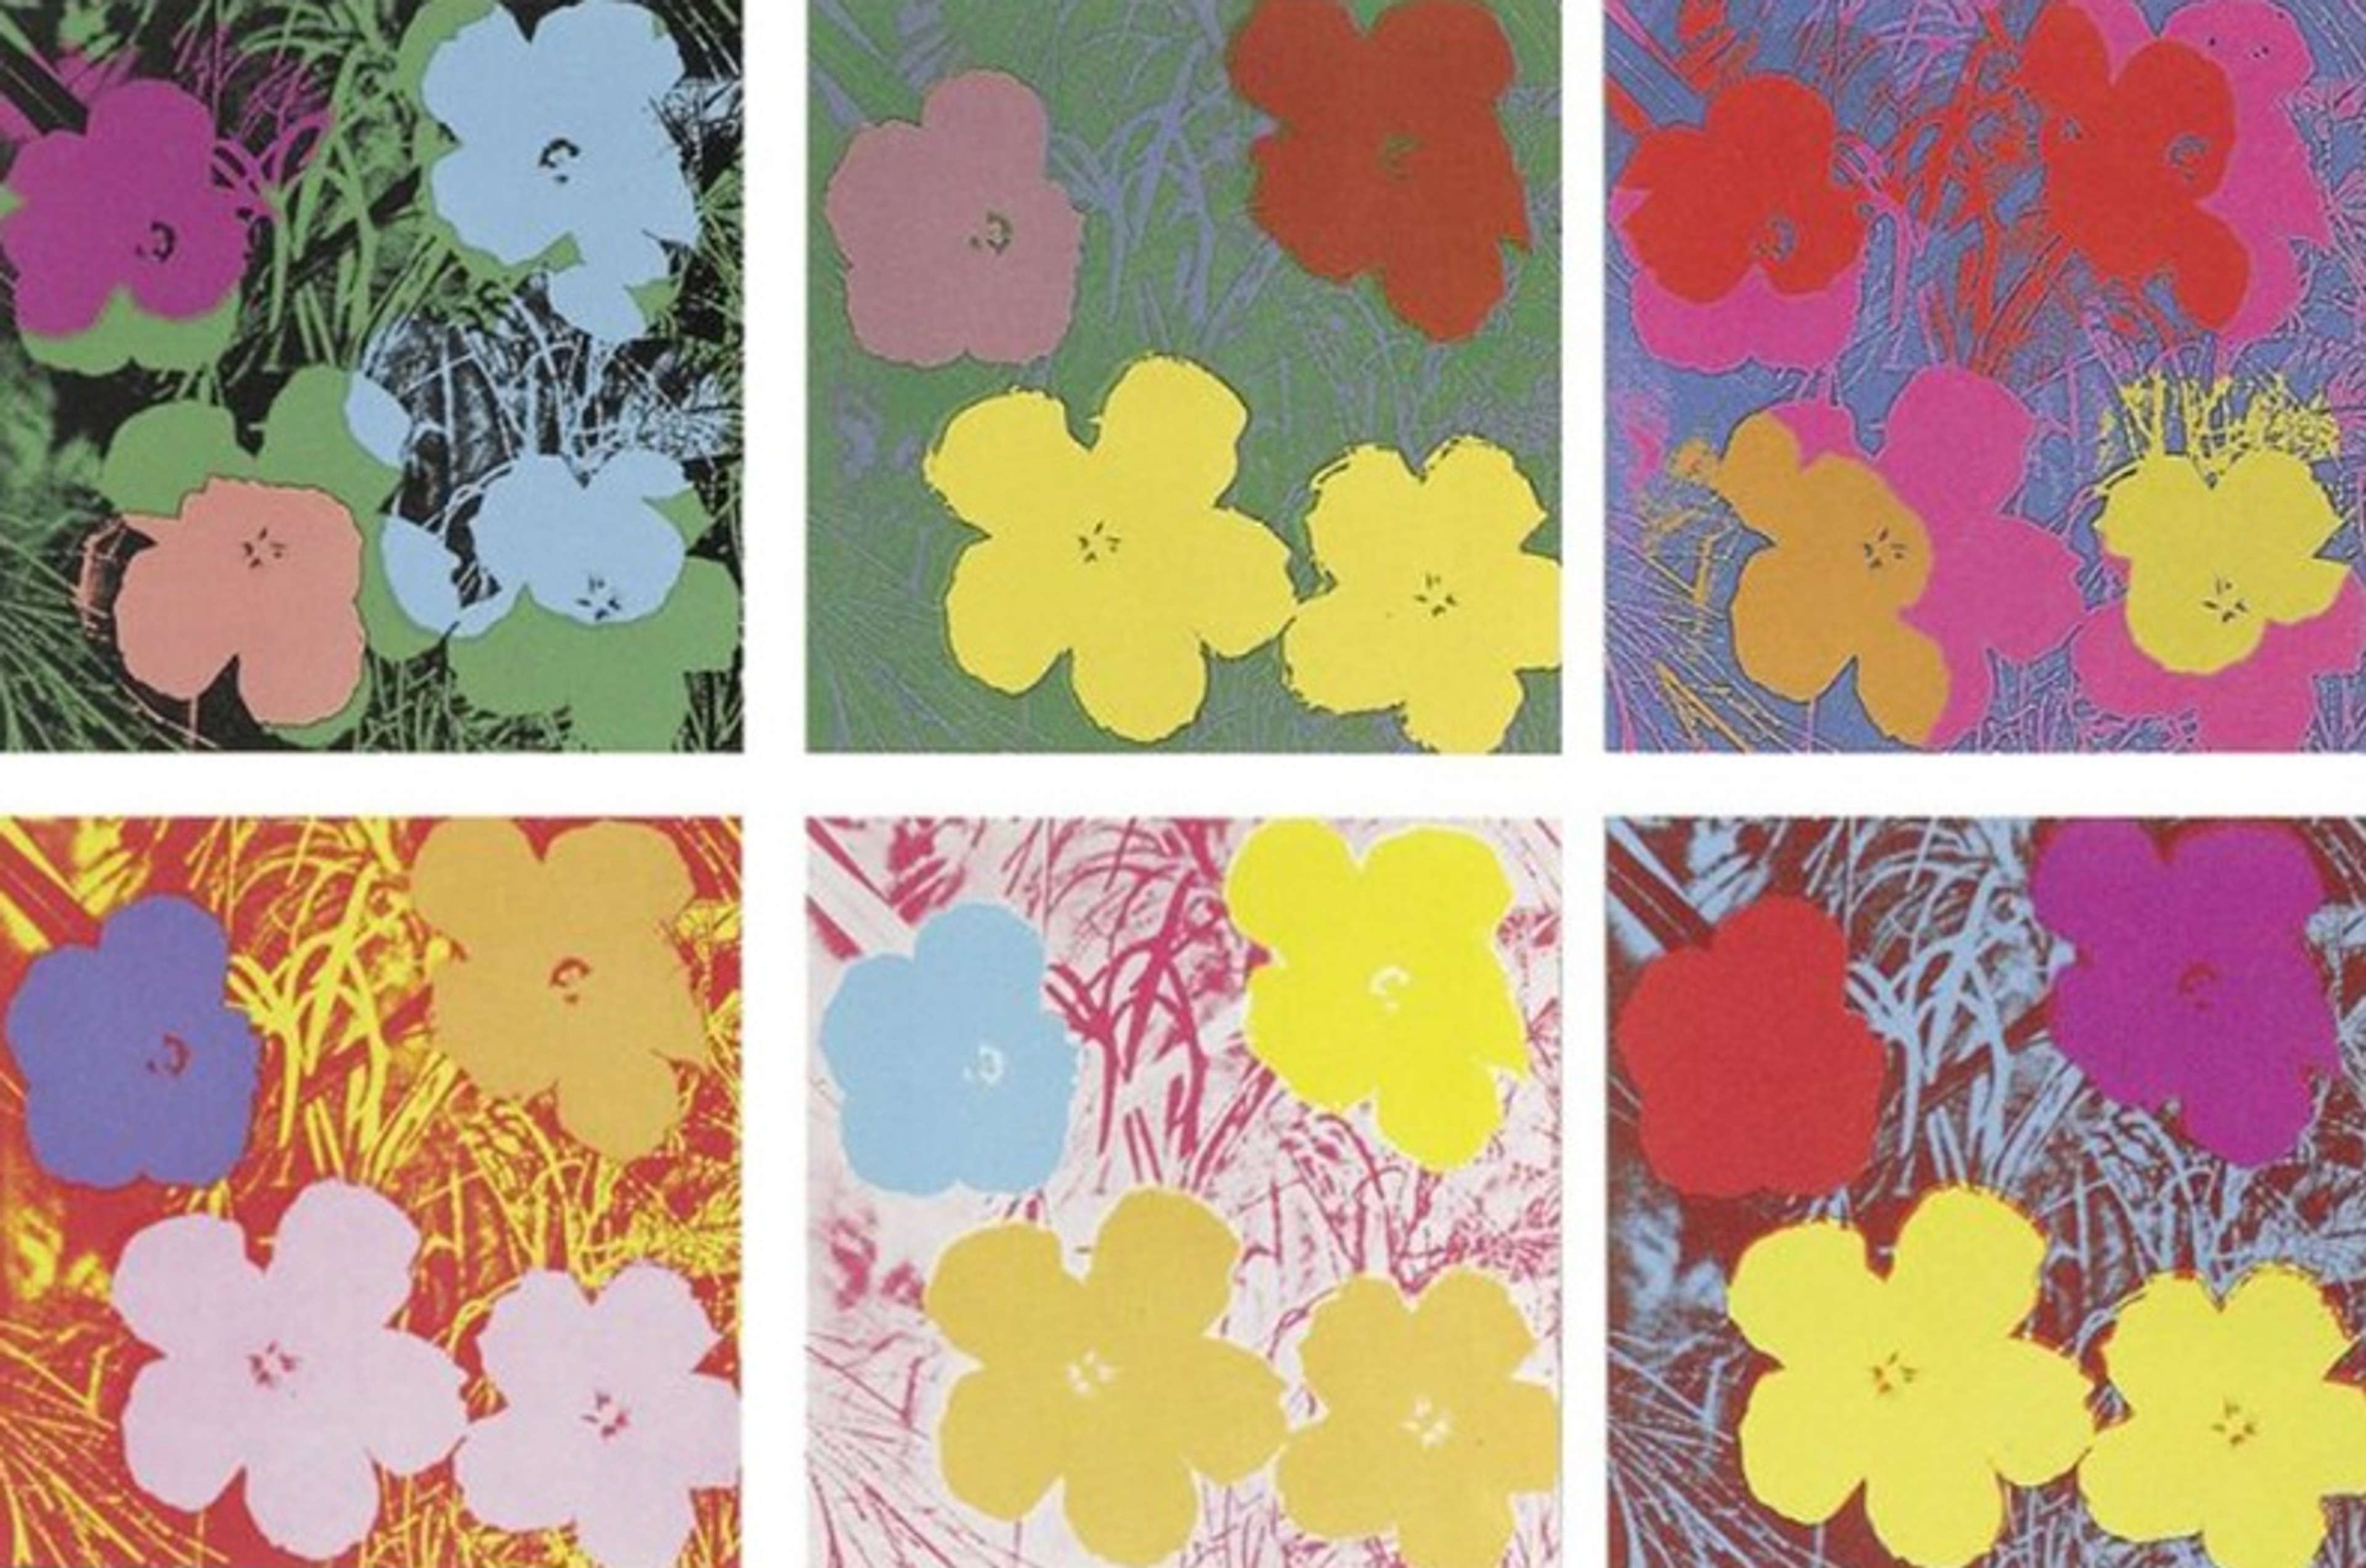 Flowers by Andy Warhol - MyArtBroker